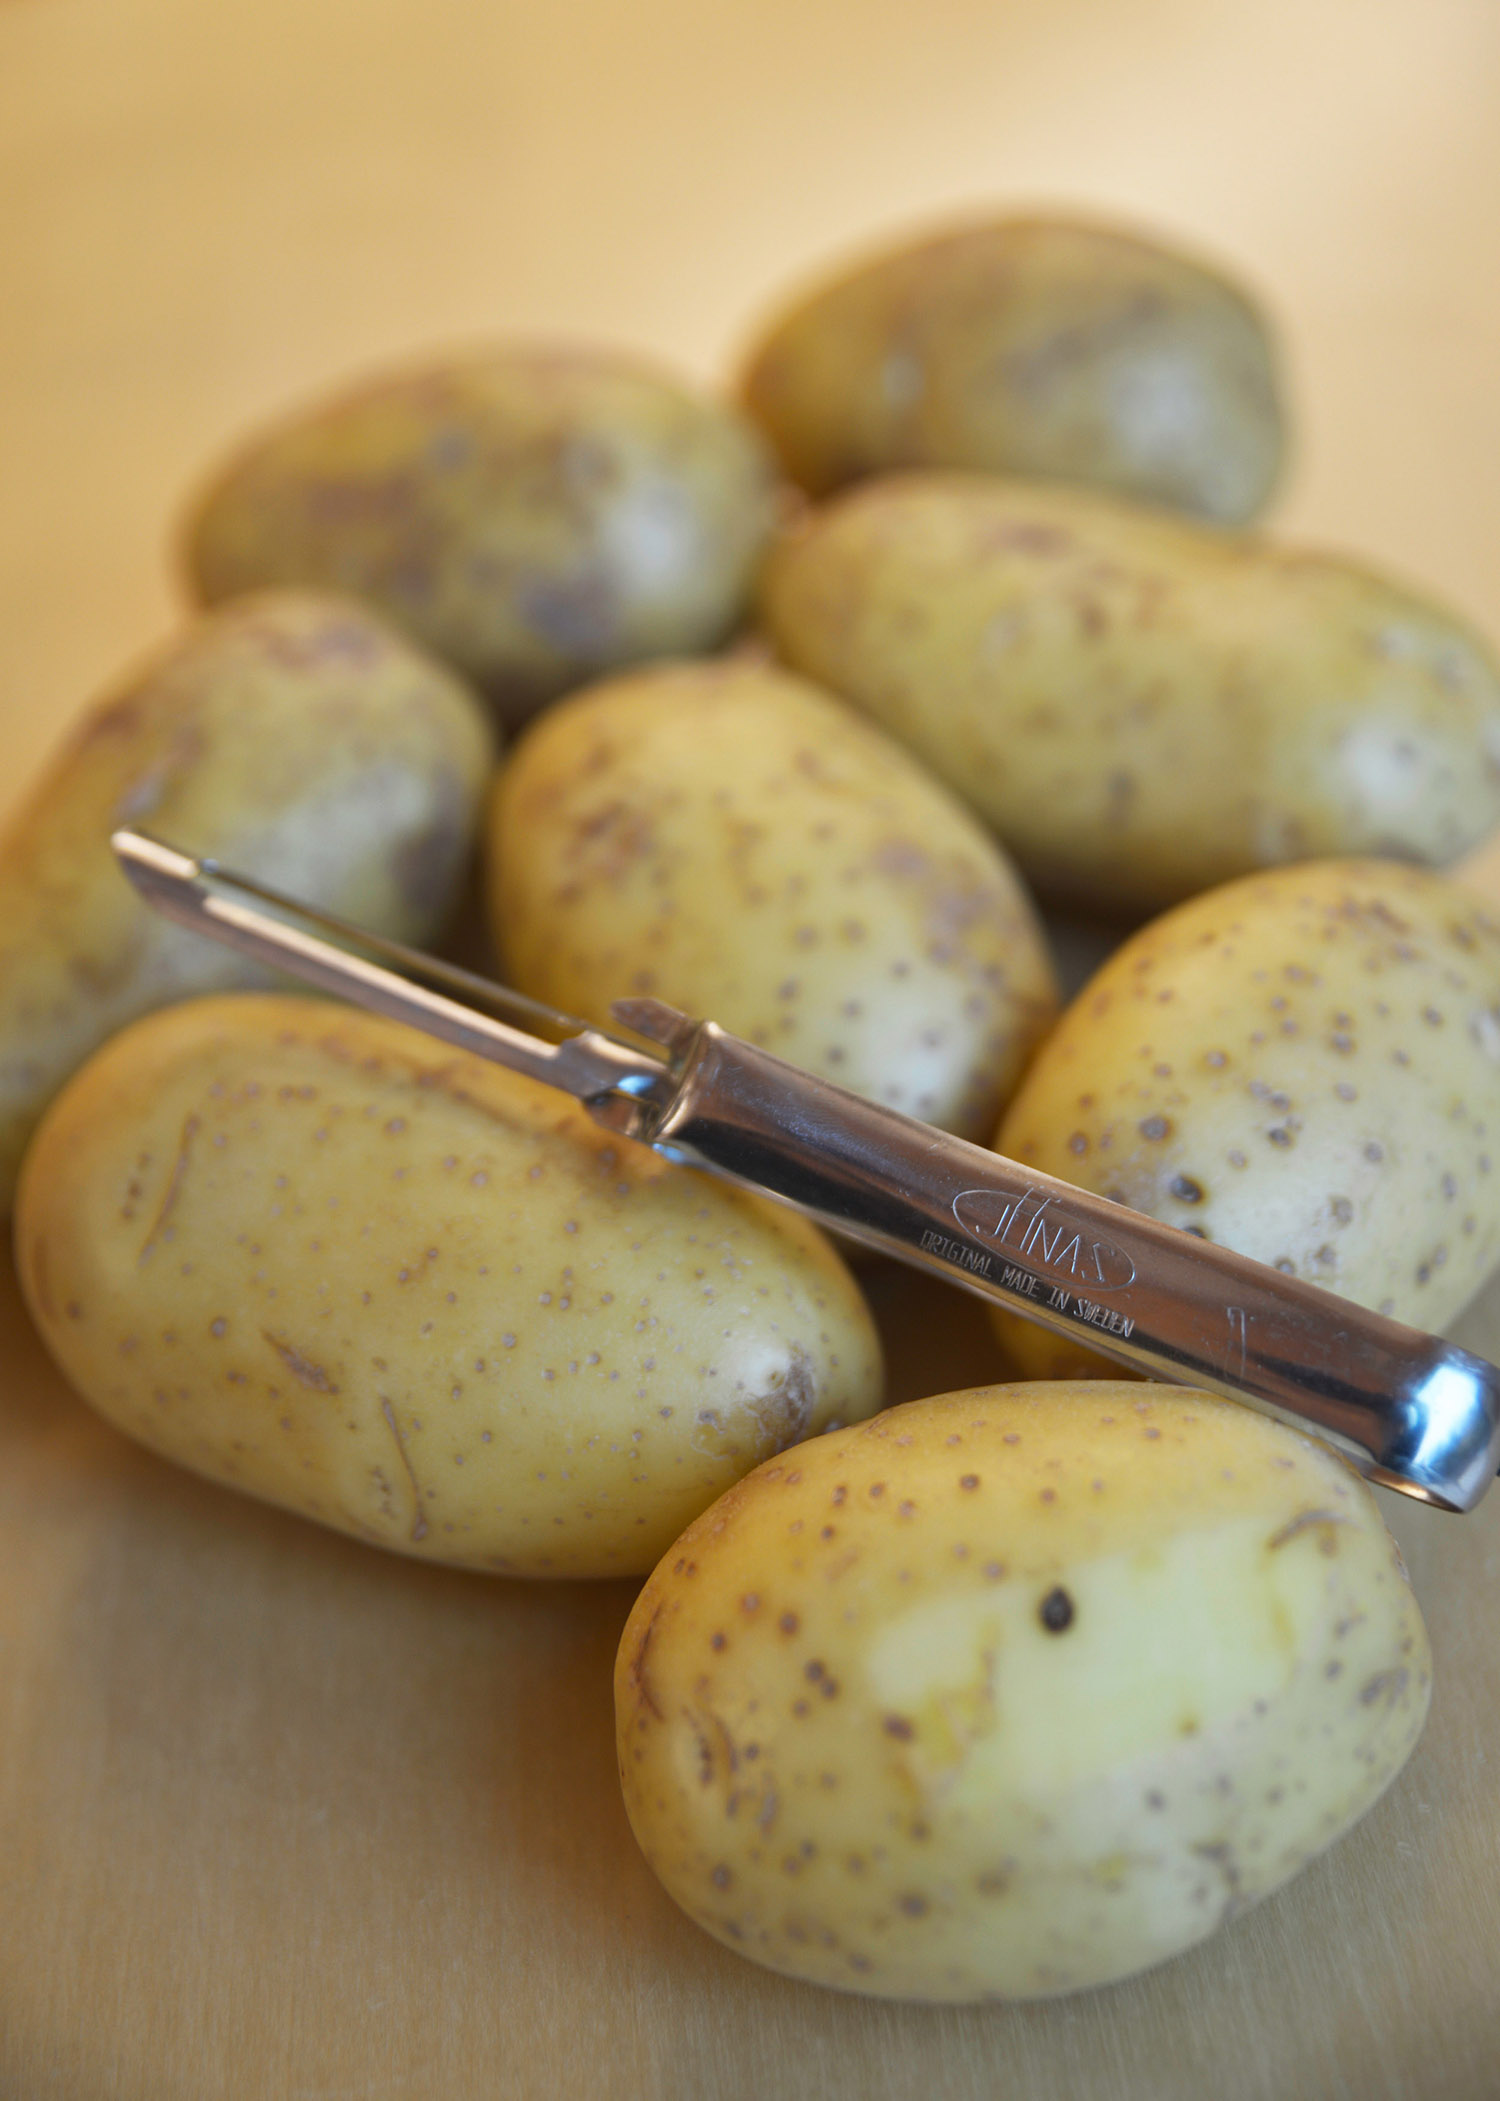 The potato peeler and some potatoes